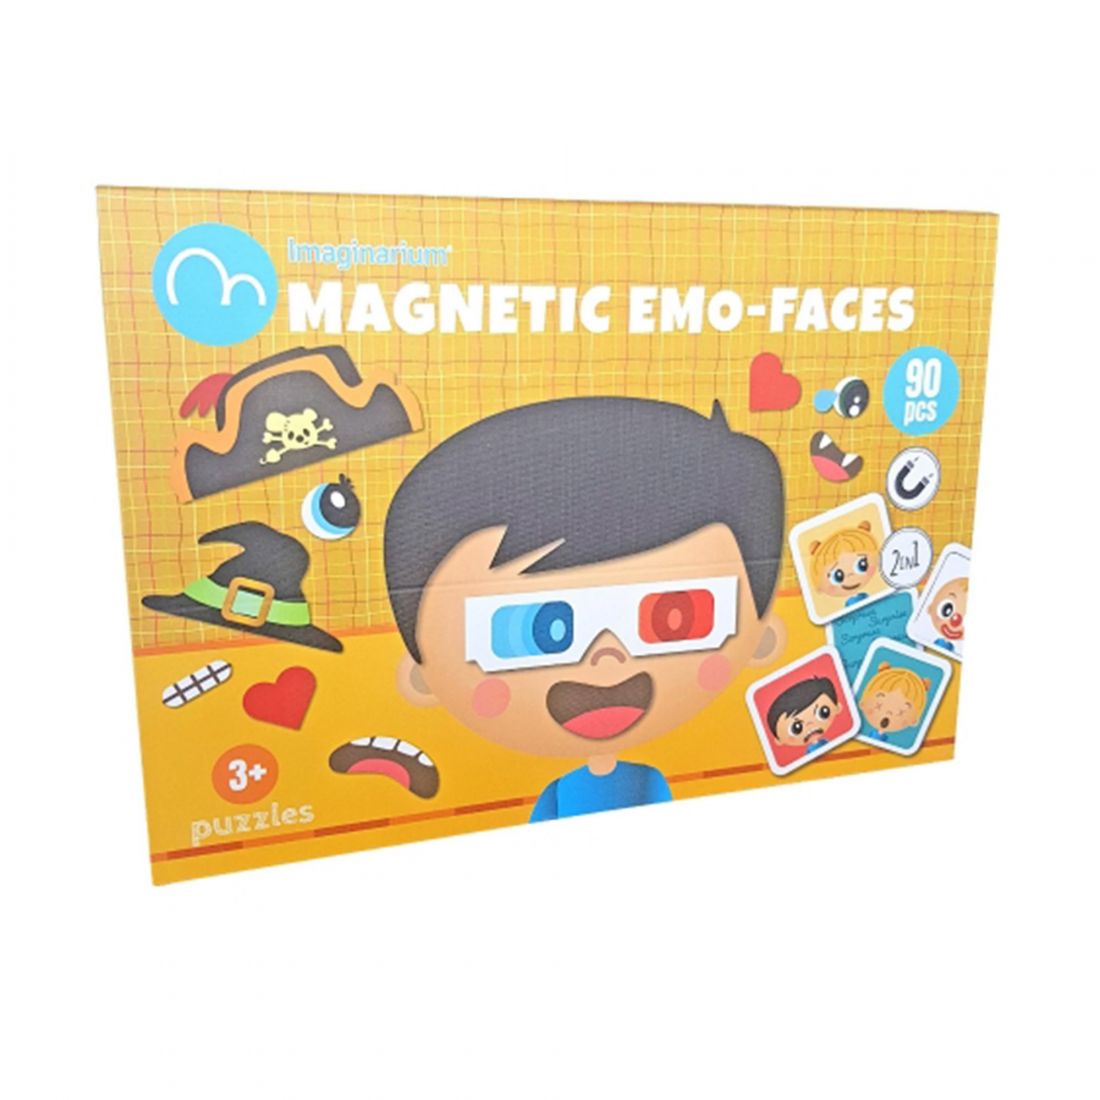 Imaginarium MAGNETIC EMO-FACES